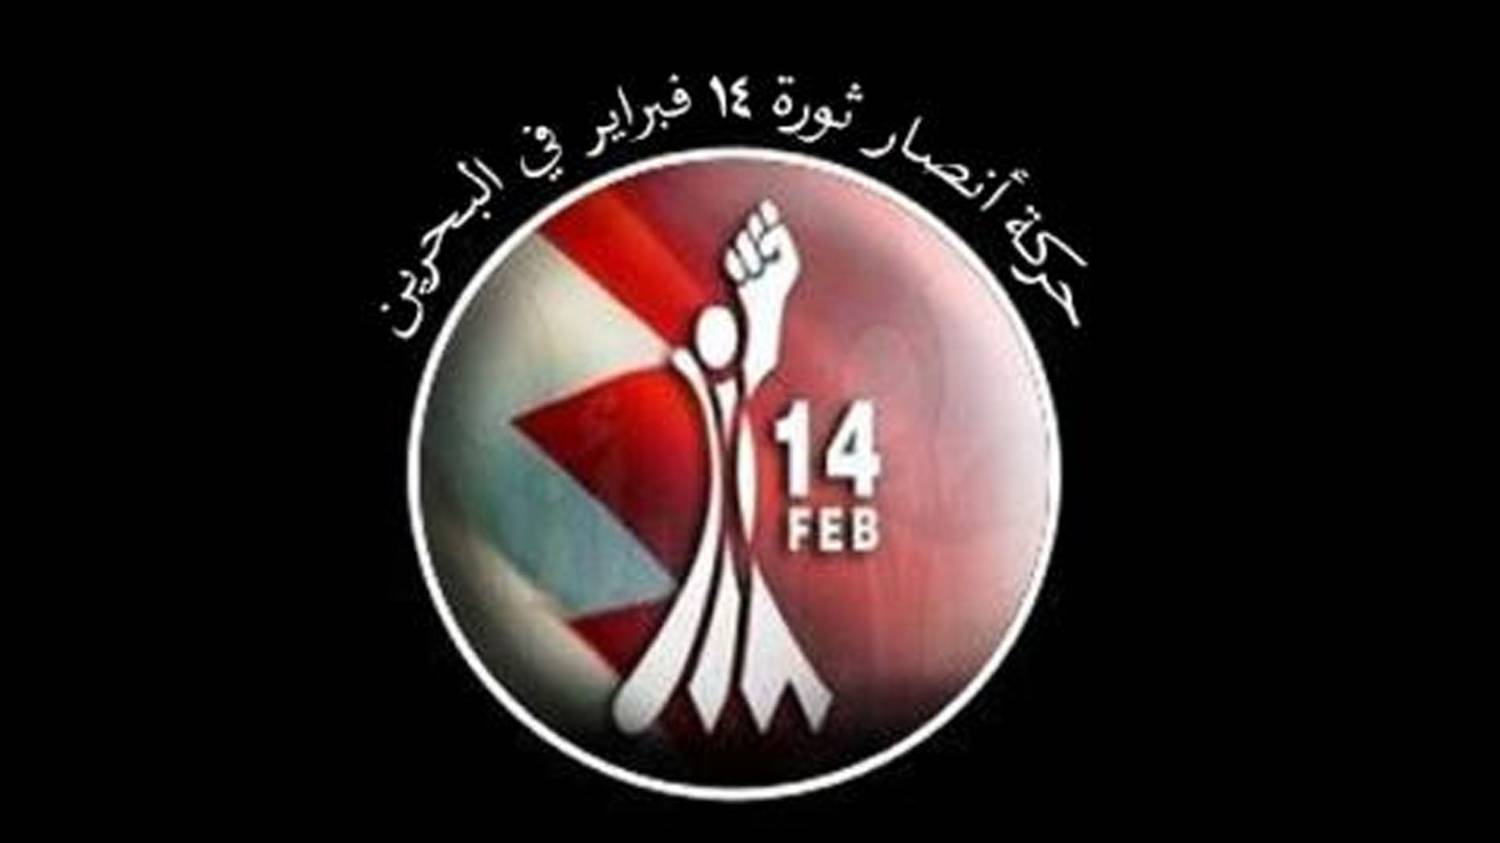 بيان من حركة أنصار شباب ثورة 14 فبراير  بمناسبة الذكرى السنوية الثالثة لإستشهاد قادة النصر